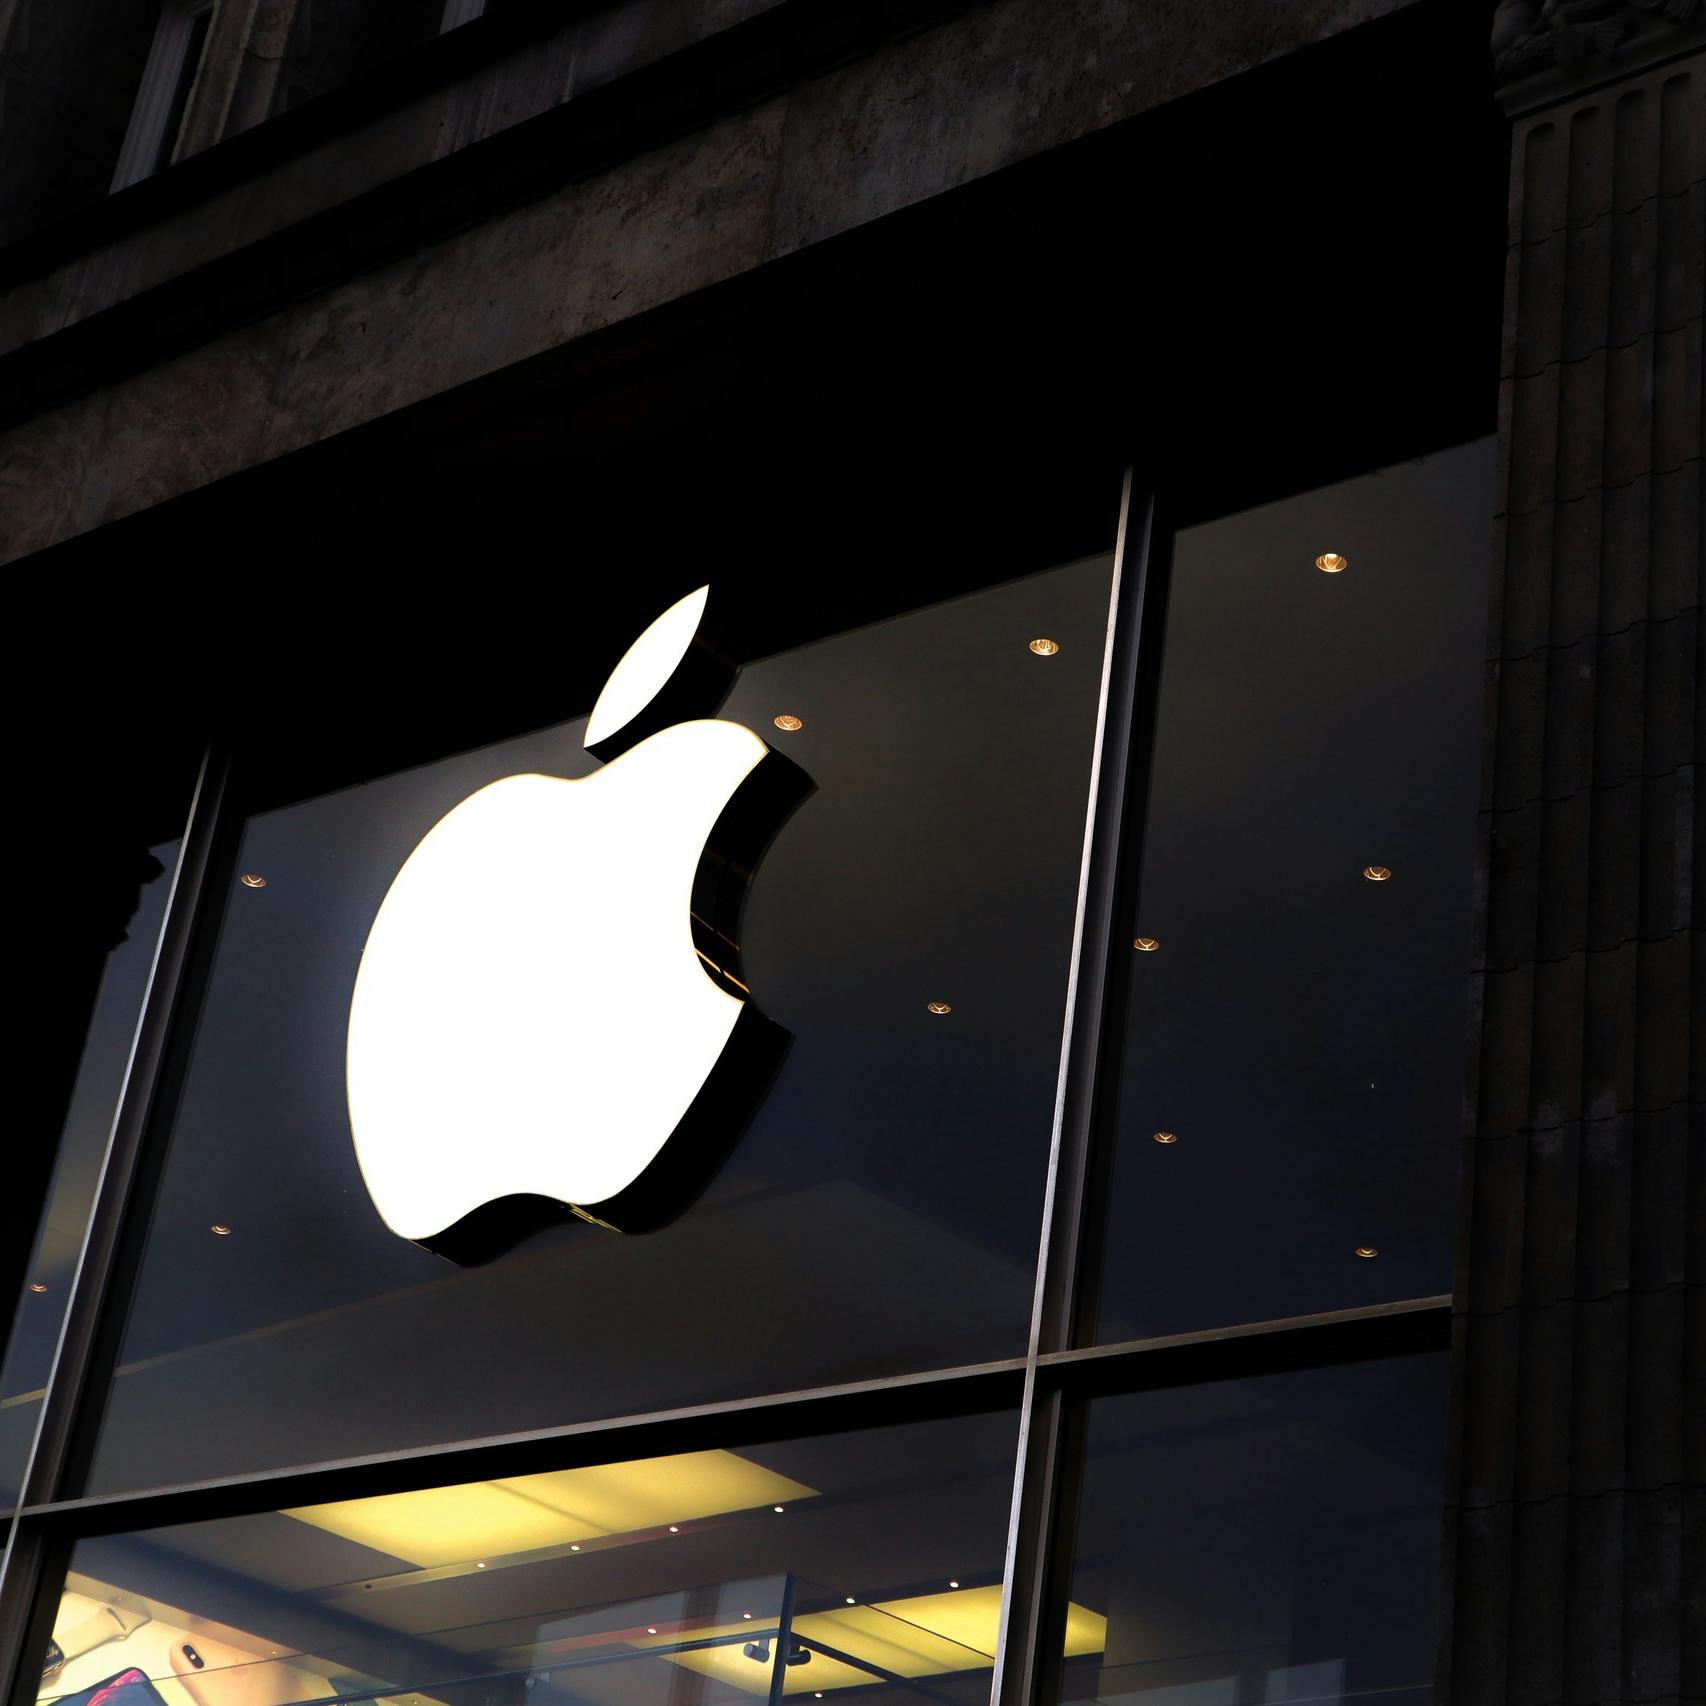 Nieuwe miljardenboete EU dreigt voor Apple om contactloos betalen